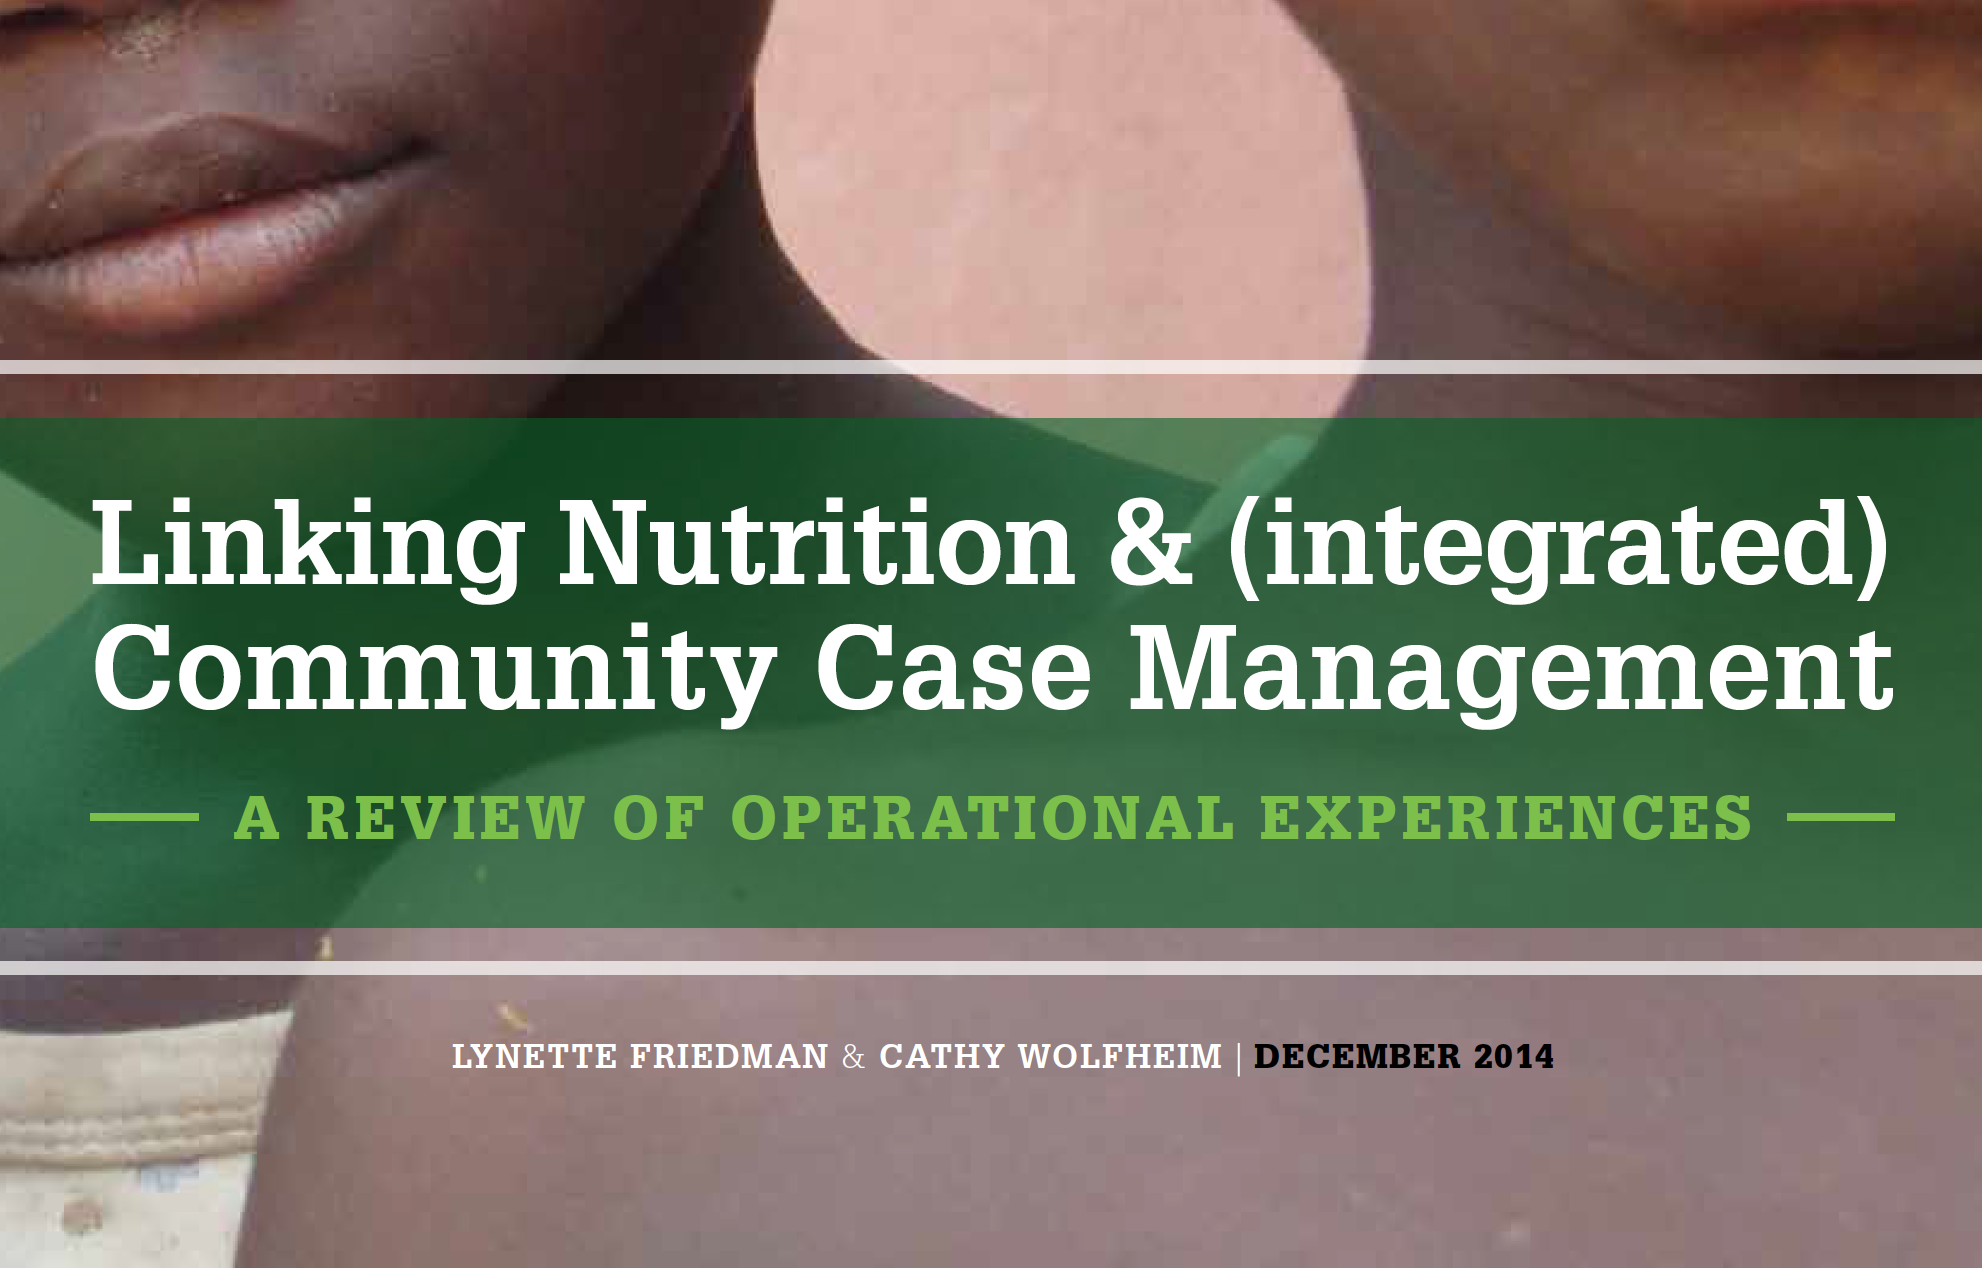 Photo: Lynette Freidman et Cathy Wolfheim_Linking Rapport final de la PIPC et de la nutrition_12.2014 cover